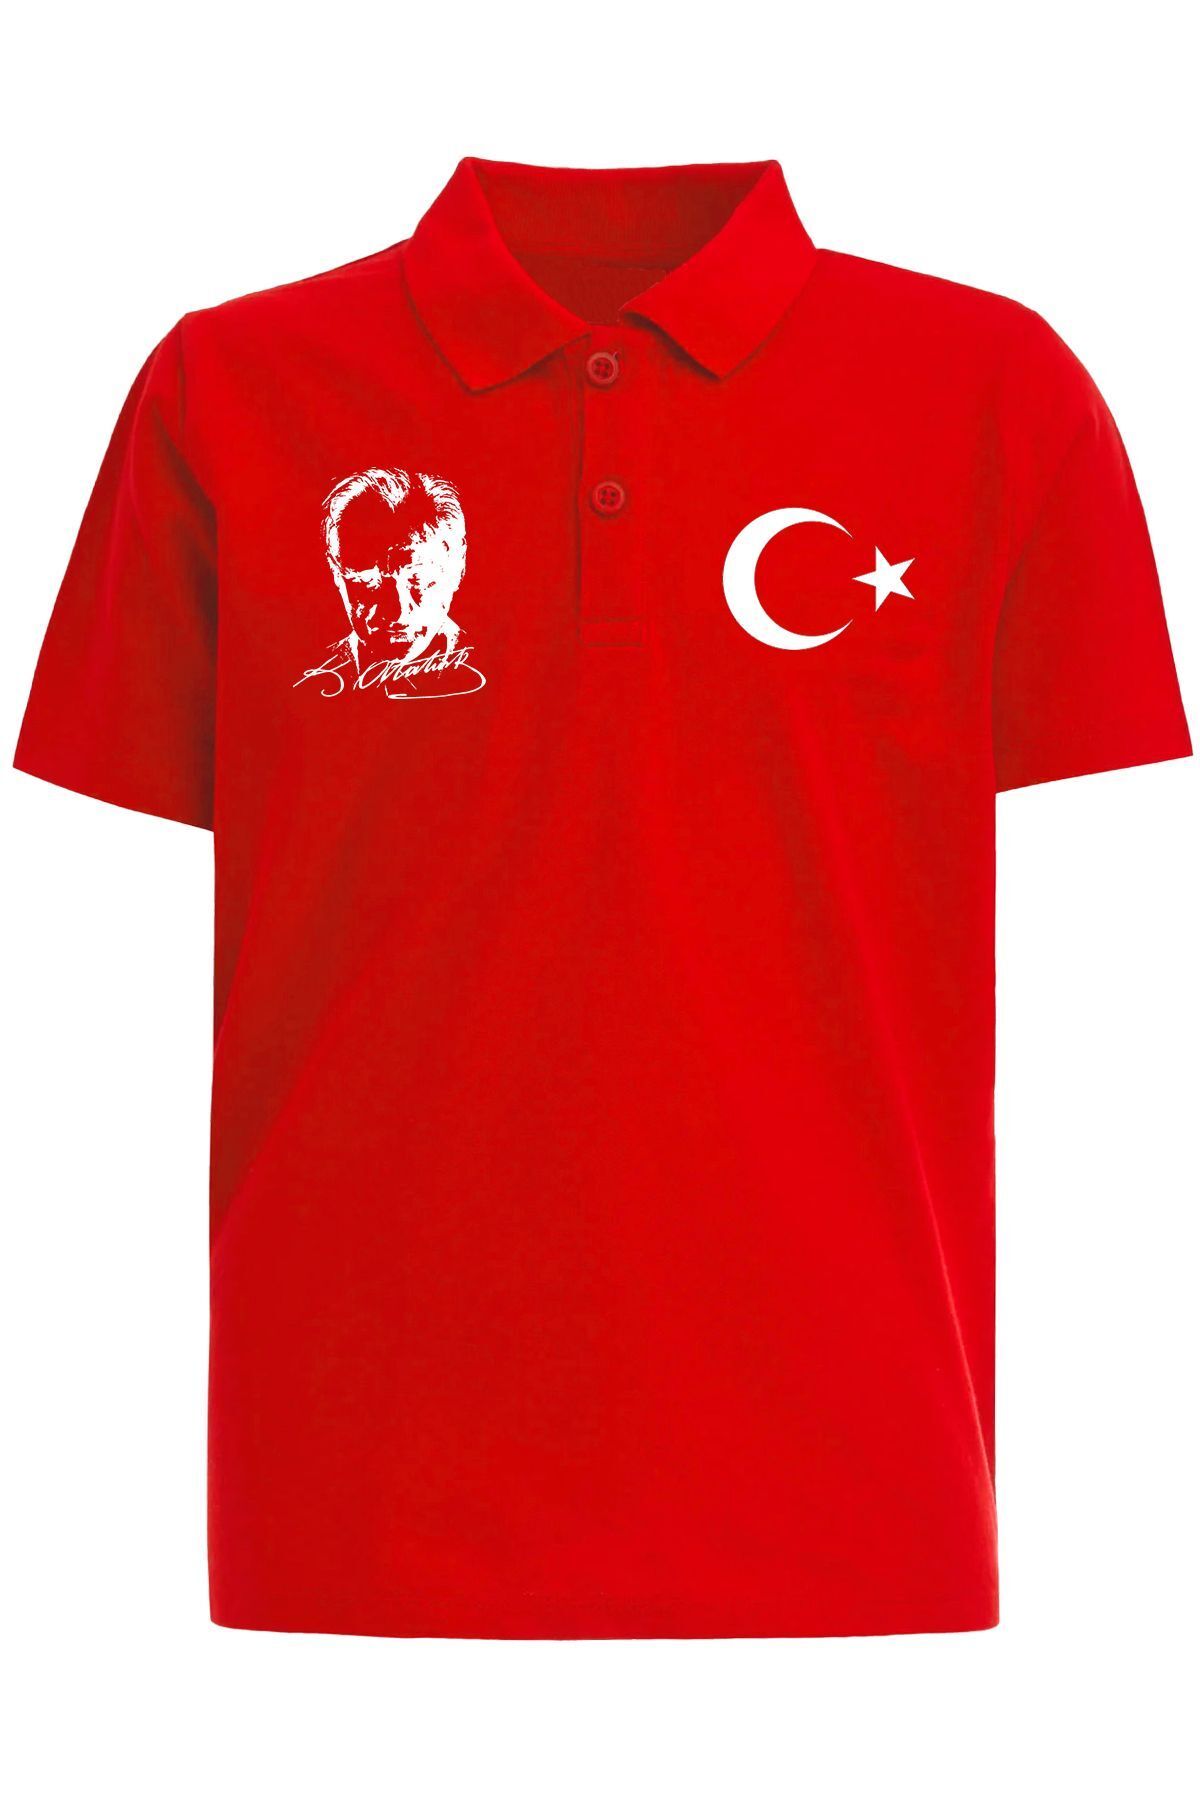 Çapıt Polo Yaka Atatürk ve Ay Yıldızlı Kırmızı Kısa Kollu 23 Nisan Tişört